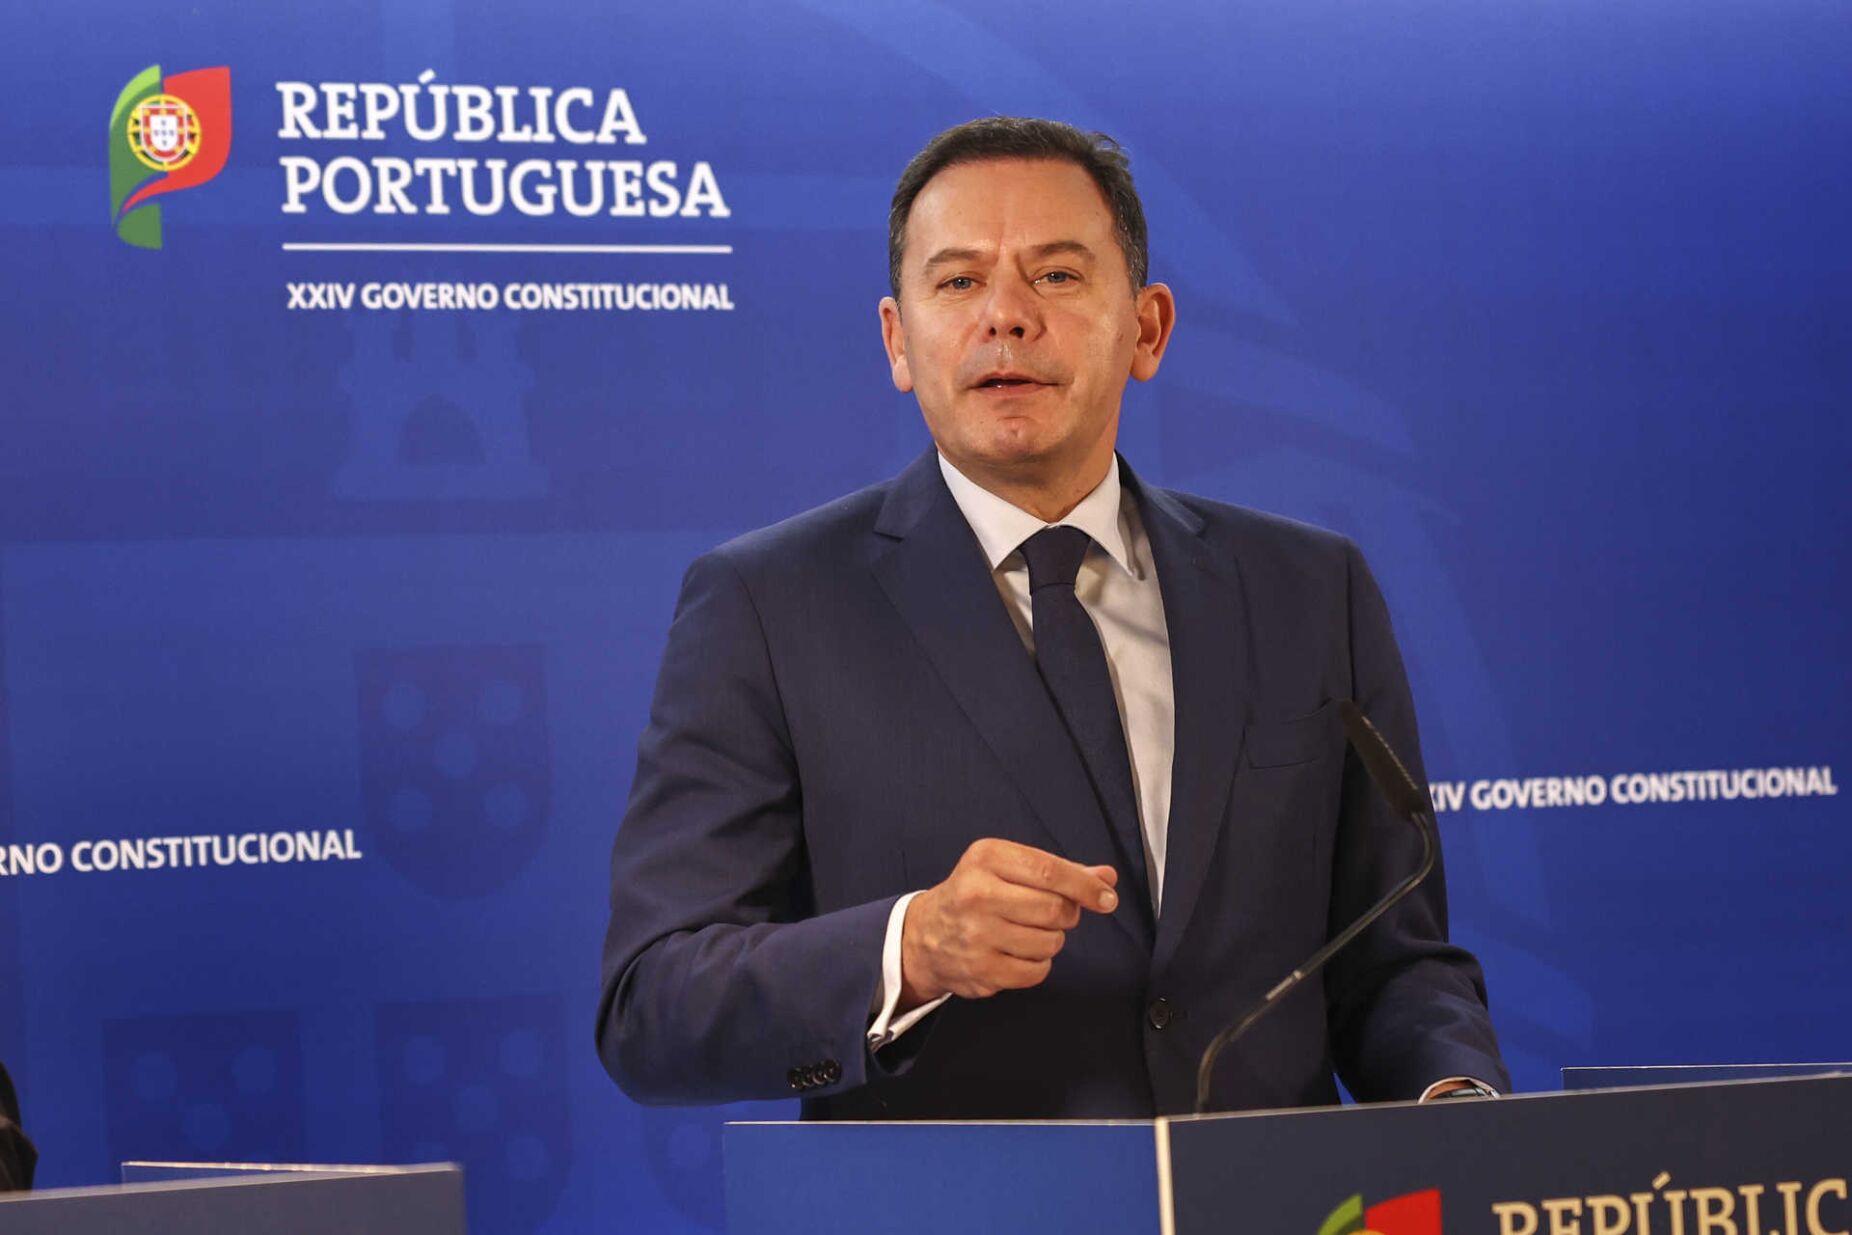 Montenegro declarou apoio a Albuquerque e defendeu cooperação com as Regiões Autónomas